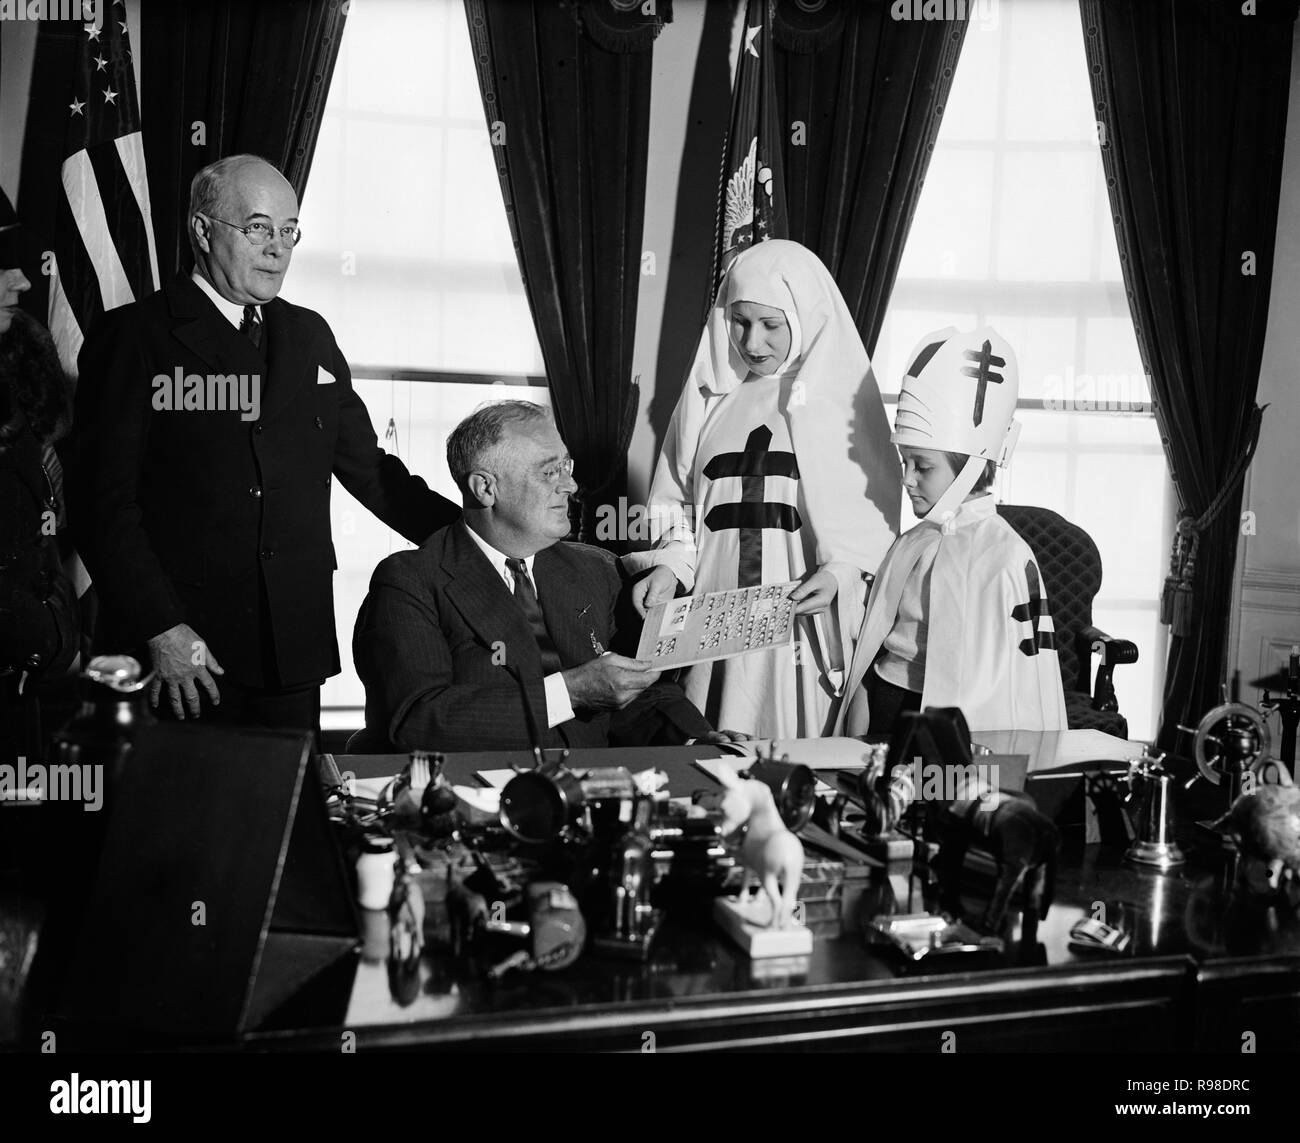 Us-Präsident Franklin Roosevelt empfangen Weihnachten Dichtungen Präsentiert durch nationale Tuberkulose Association, Oval Office im Weißen Haus, Washington DC, USA, Harris & Ewing, 18. Dezember 1936 Stockfoto